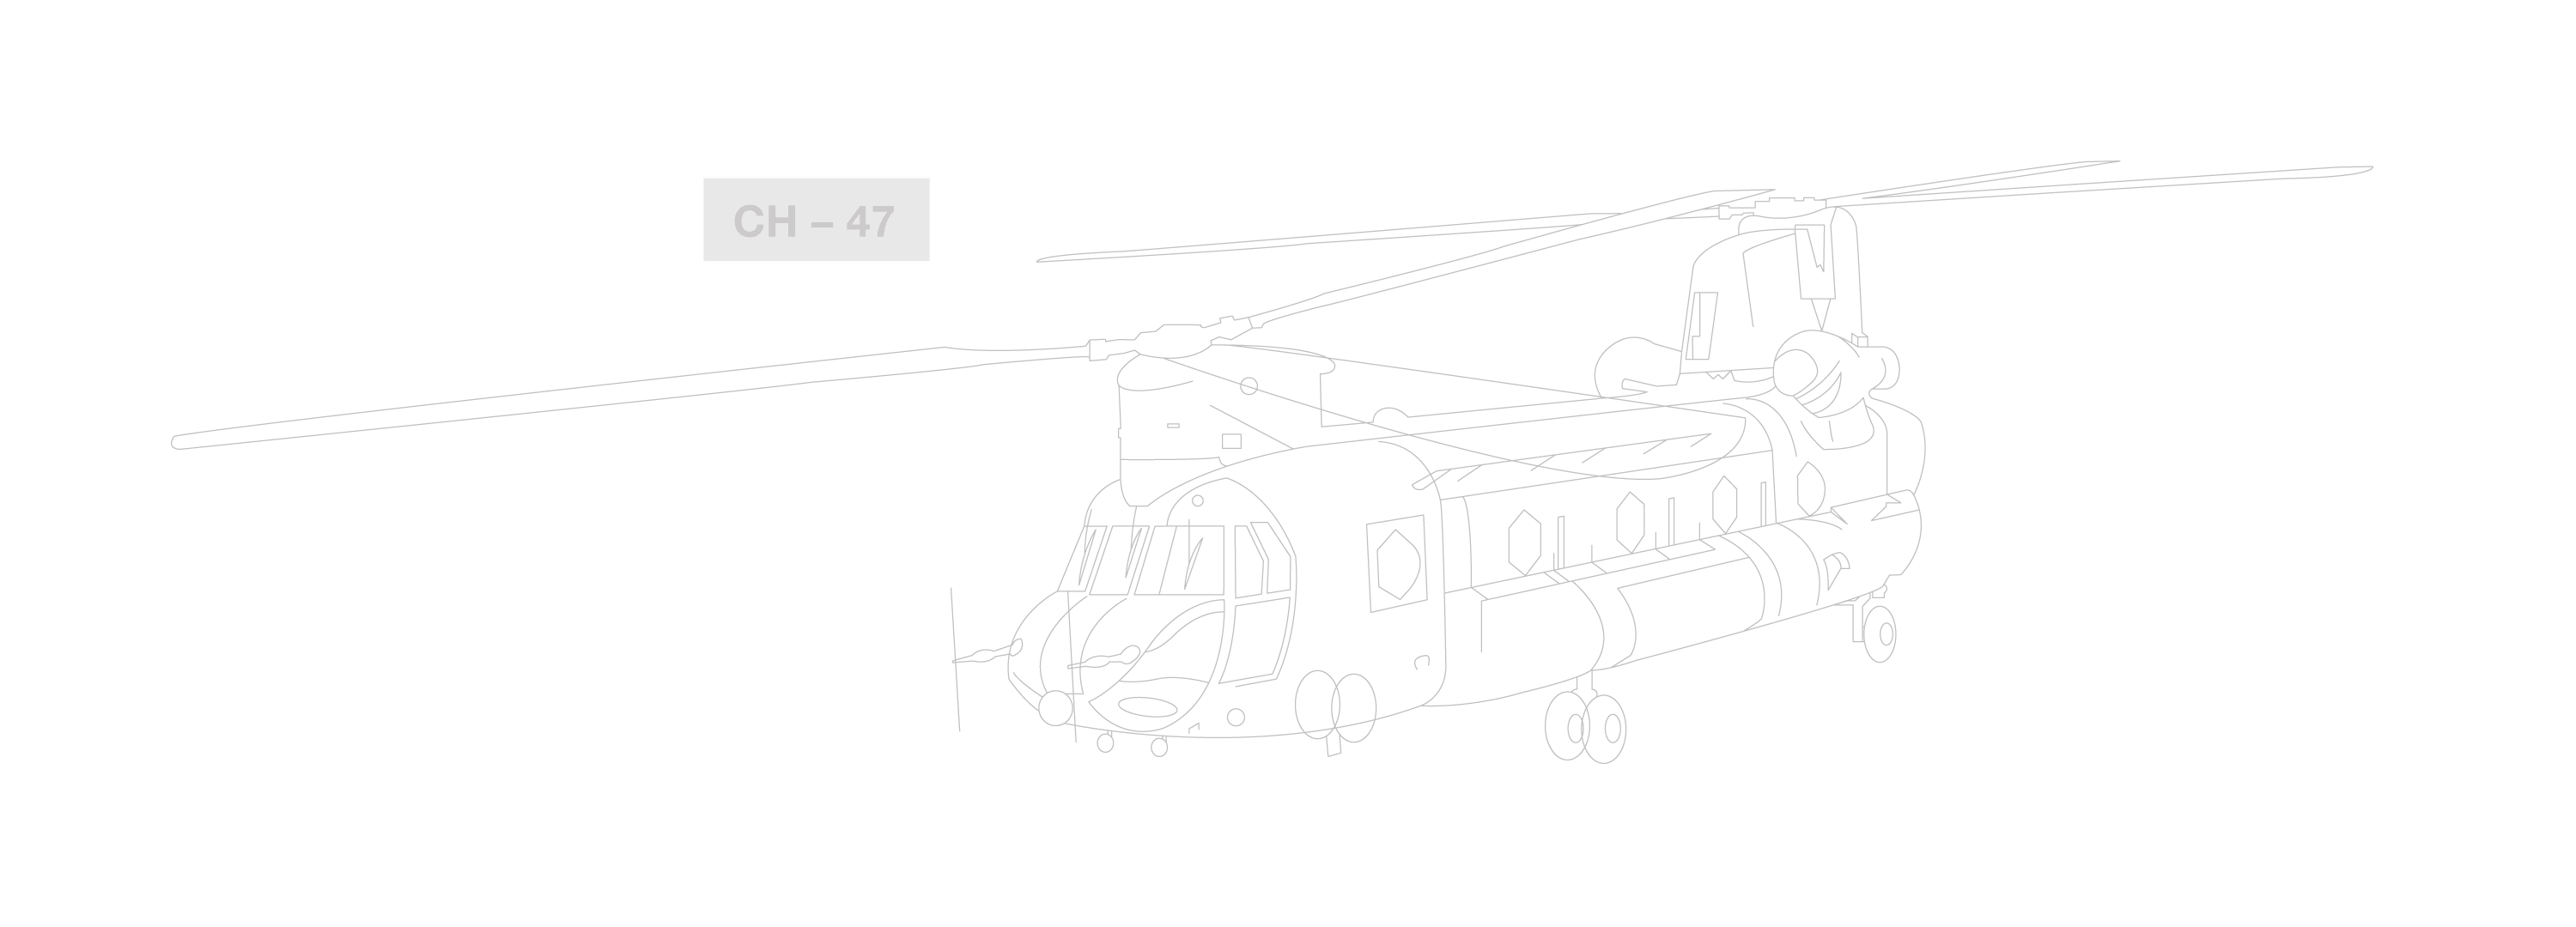 ch47-1